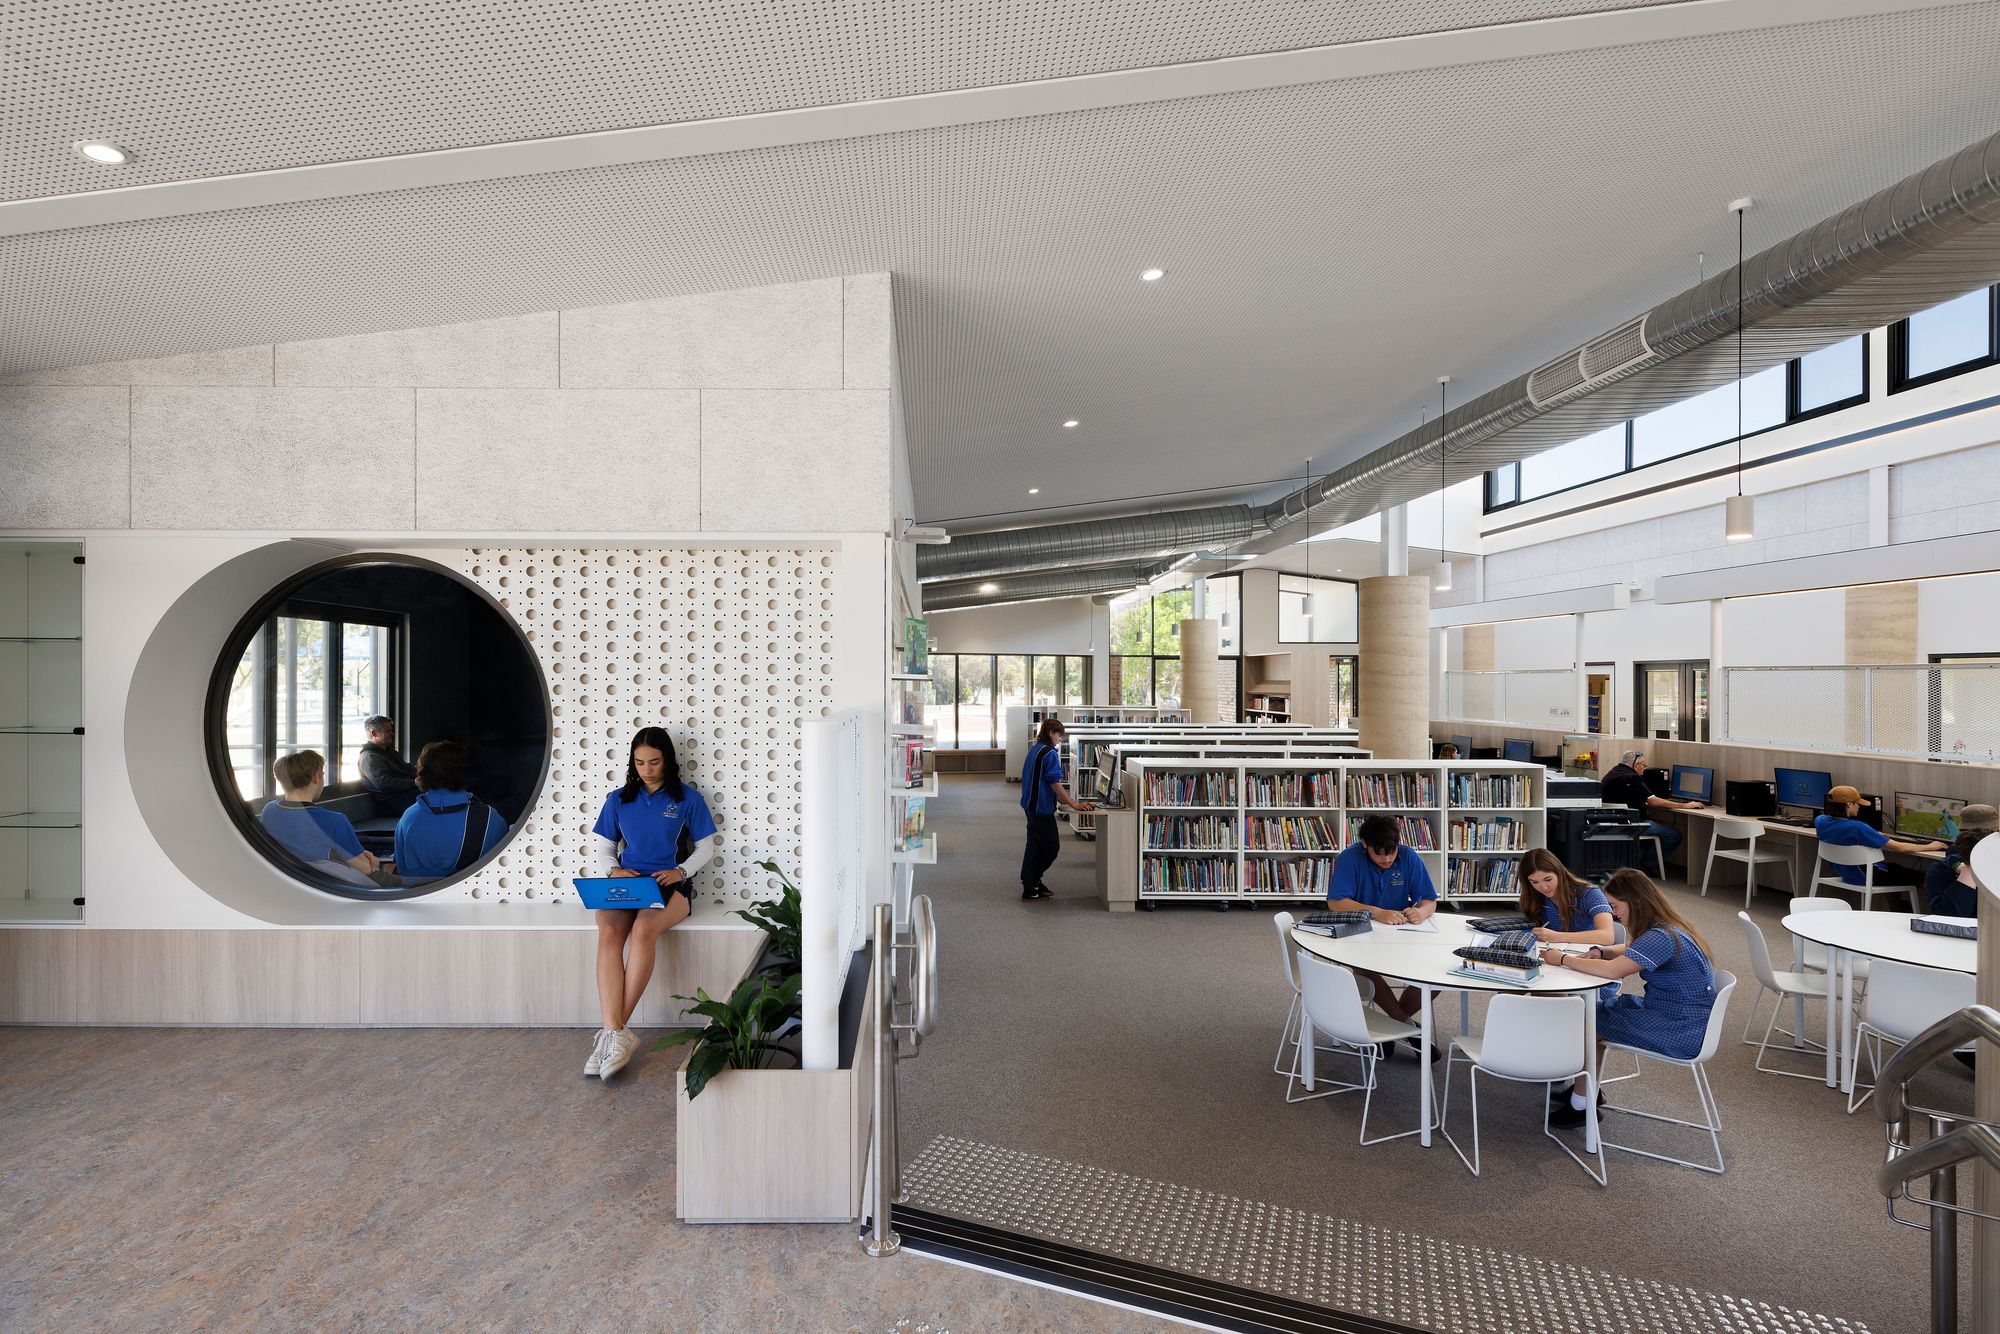 图片[5]|贝纳拉P-12学院STEAM中心和图书馆|ART-Arrakis | 建筑室内设计的创新与灵感